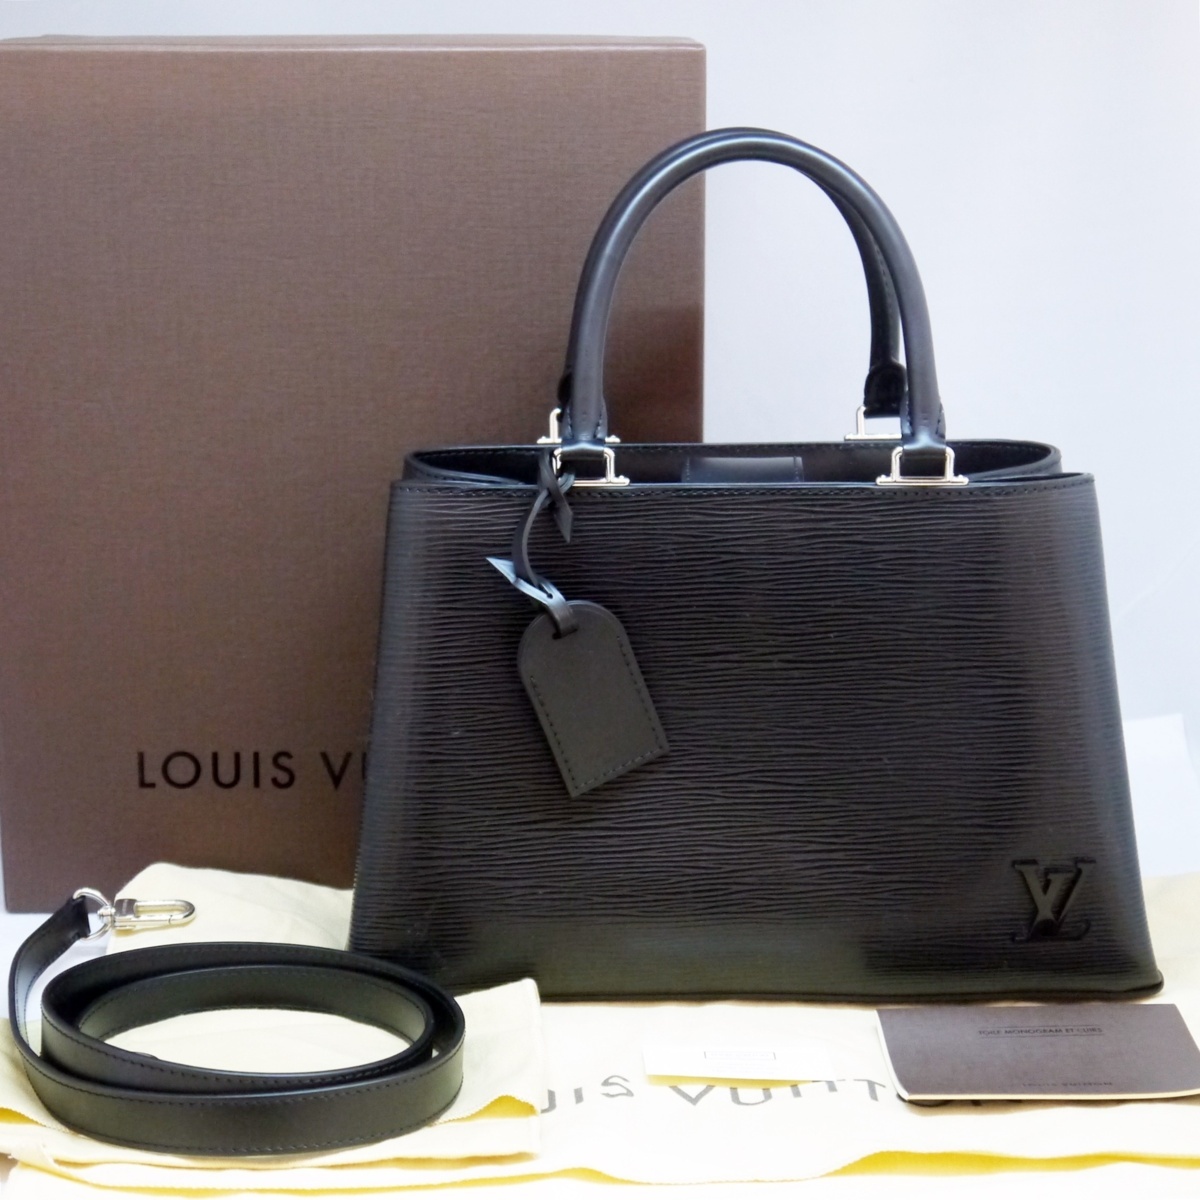 USED品 Louis Vuitton ルイヴィトン M51334 クレベールPM エピ ノワール ブラック 黒 2way ハンドバッグ ショルダーバッグ FL3187 外箱他_画像1